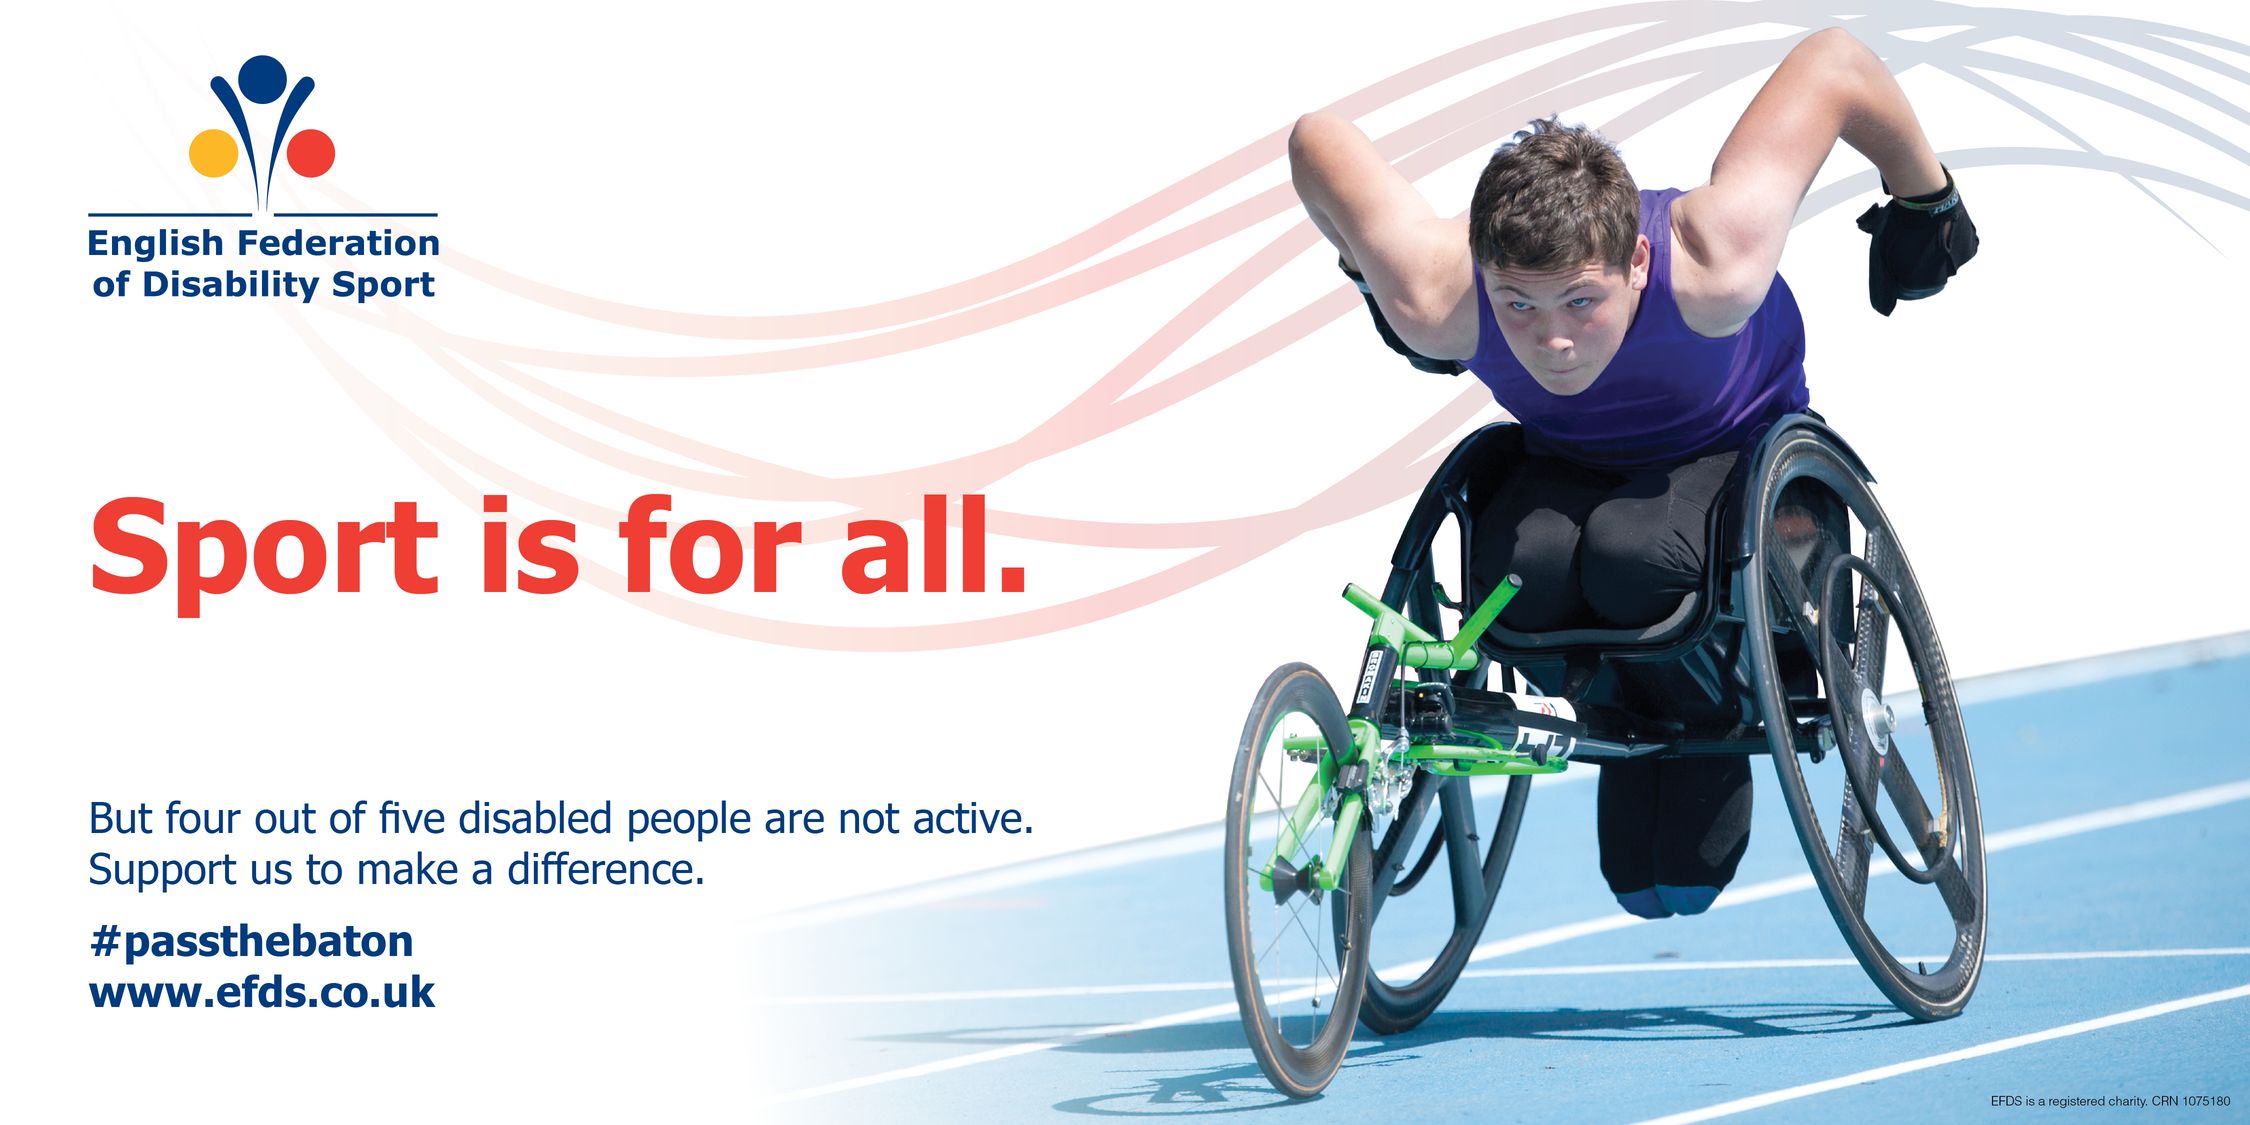 What people do sports for. Спорт для инвалидов. Реклама с инвалидами. Социальная реклама людей с ограниченными возможностями. Плакат про инвалидов.